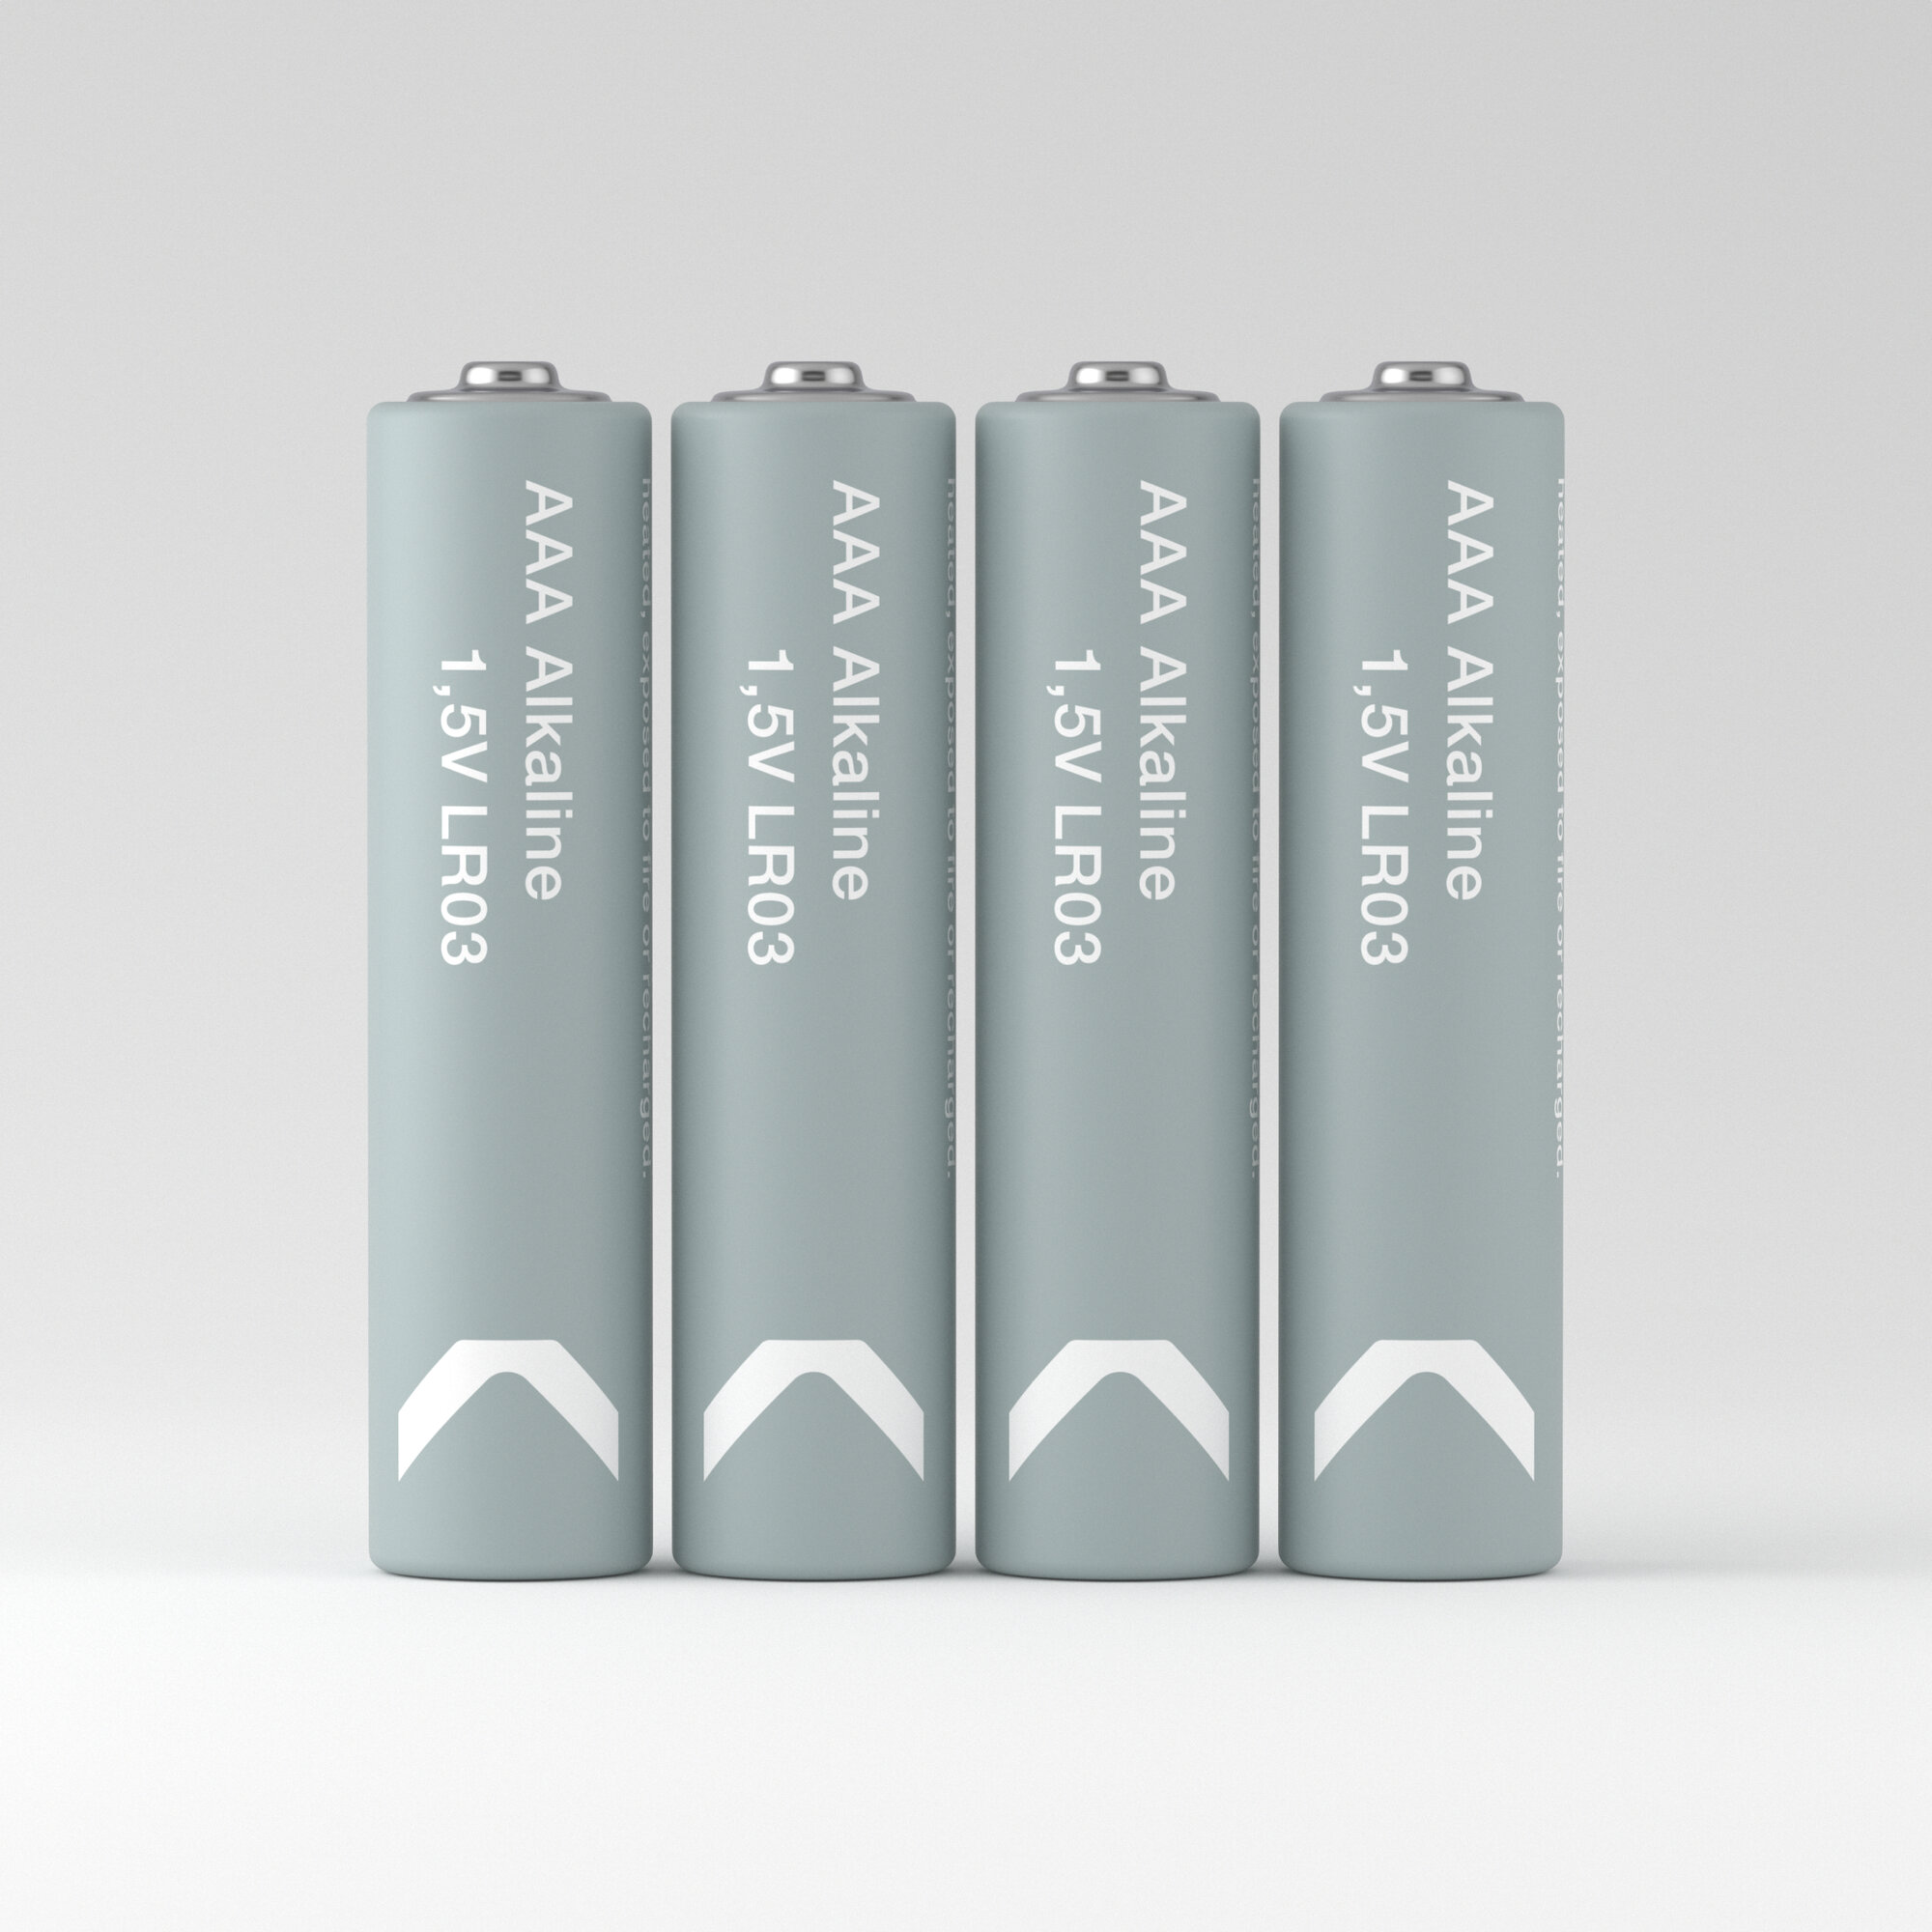 Батарейки мизинчиковые алкалиновые COMMO Everyday Batteries, LR03-ААА, 30 штук в упаковке